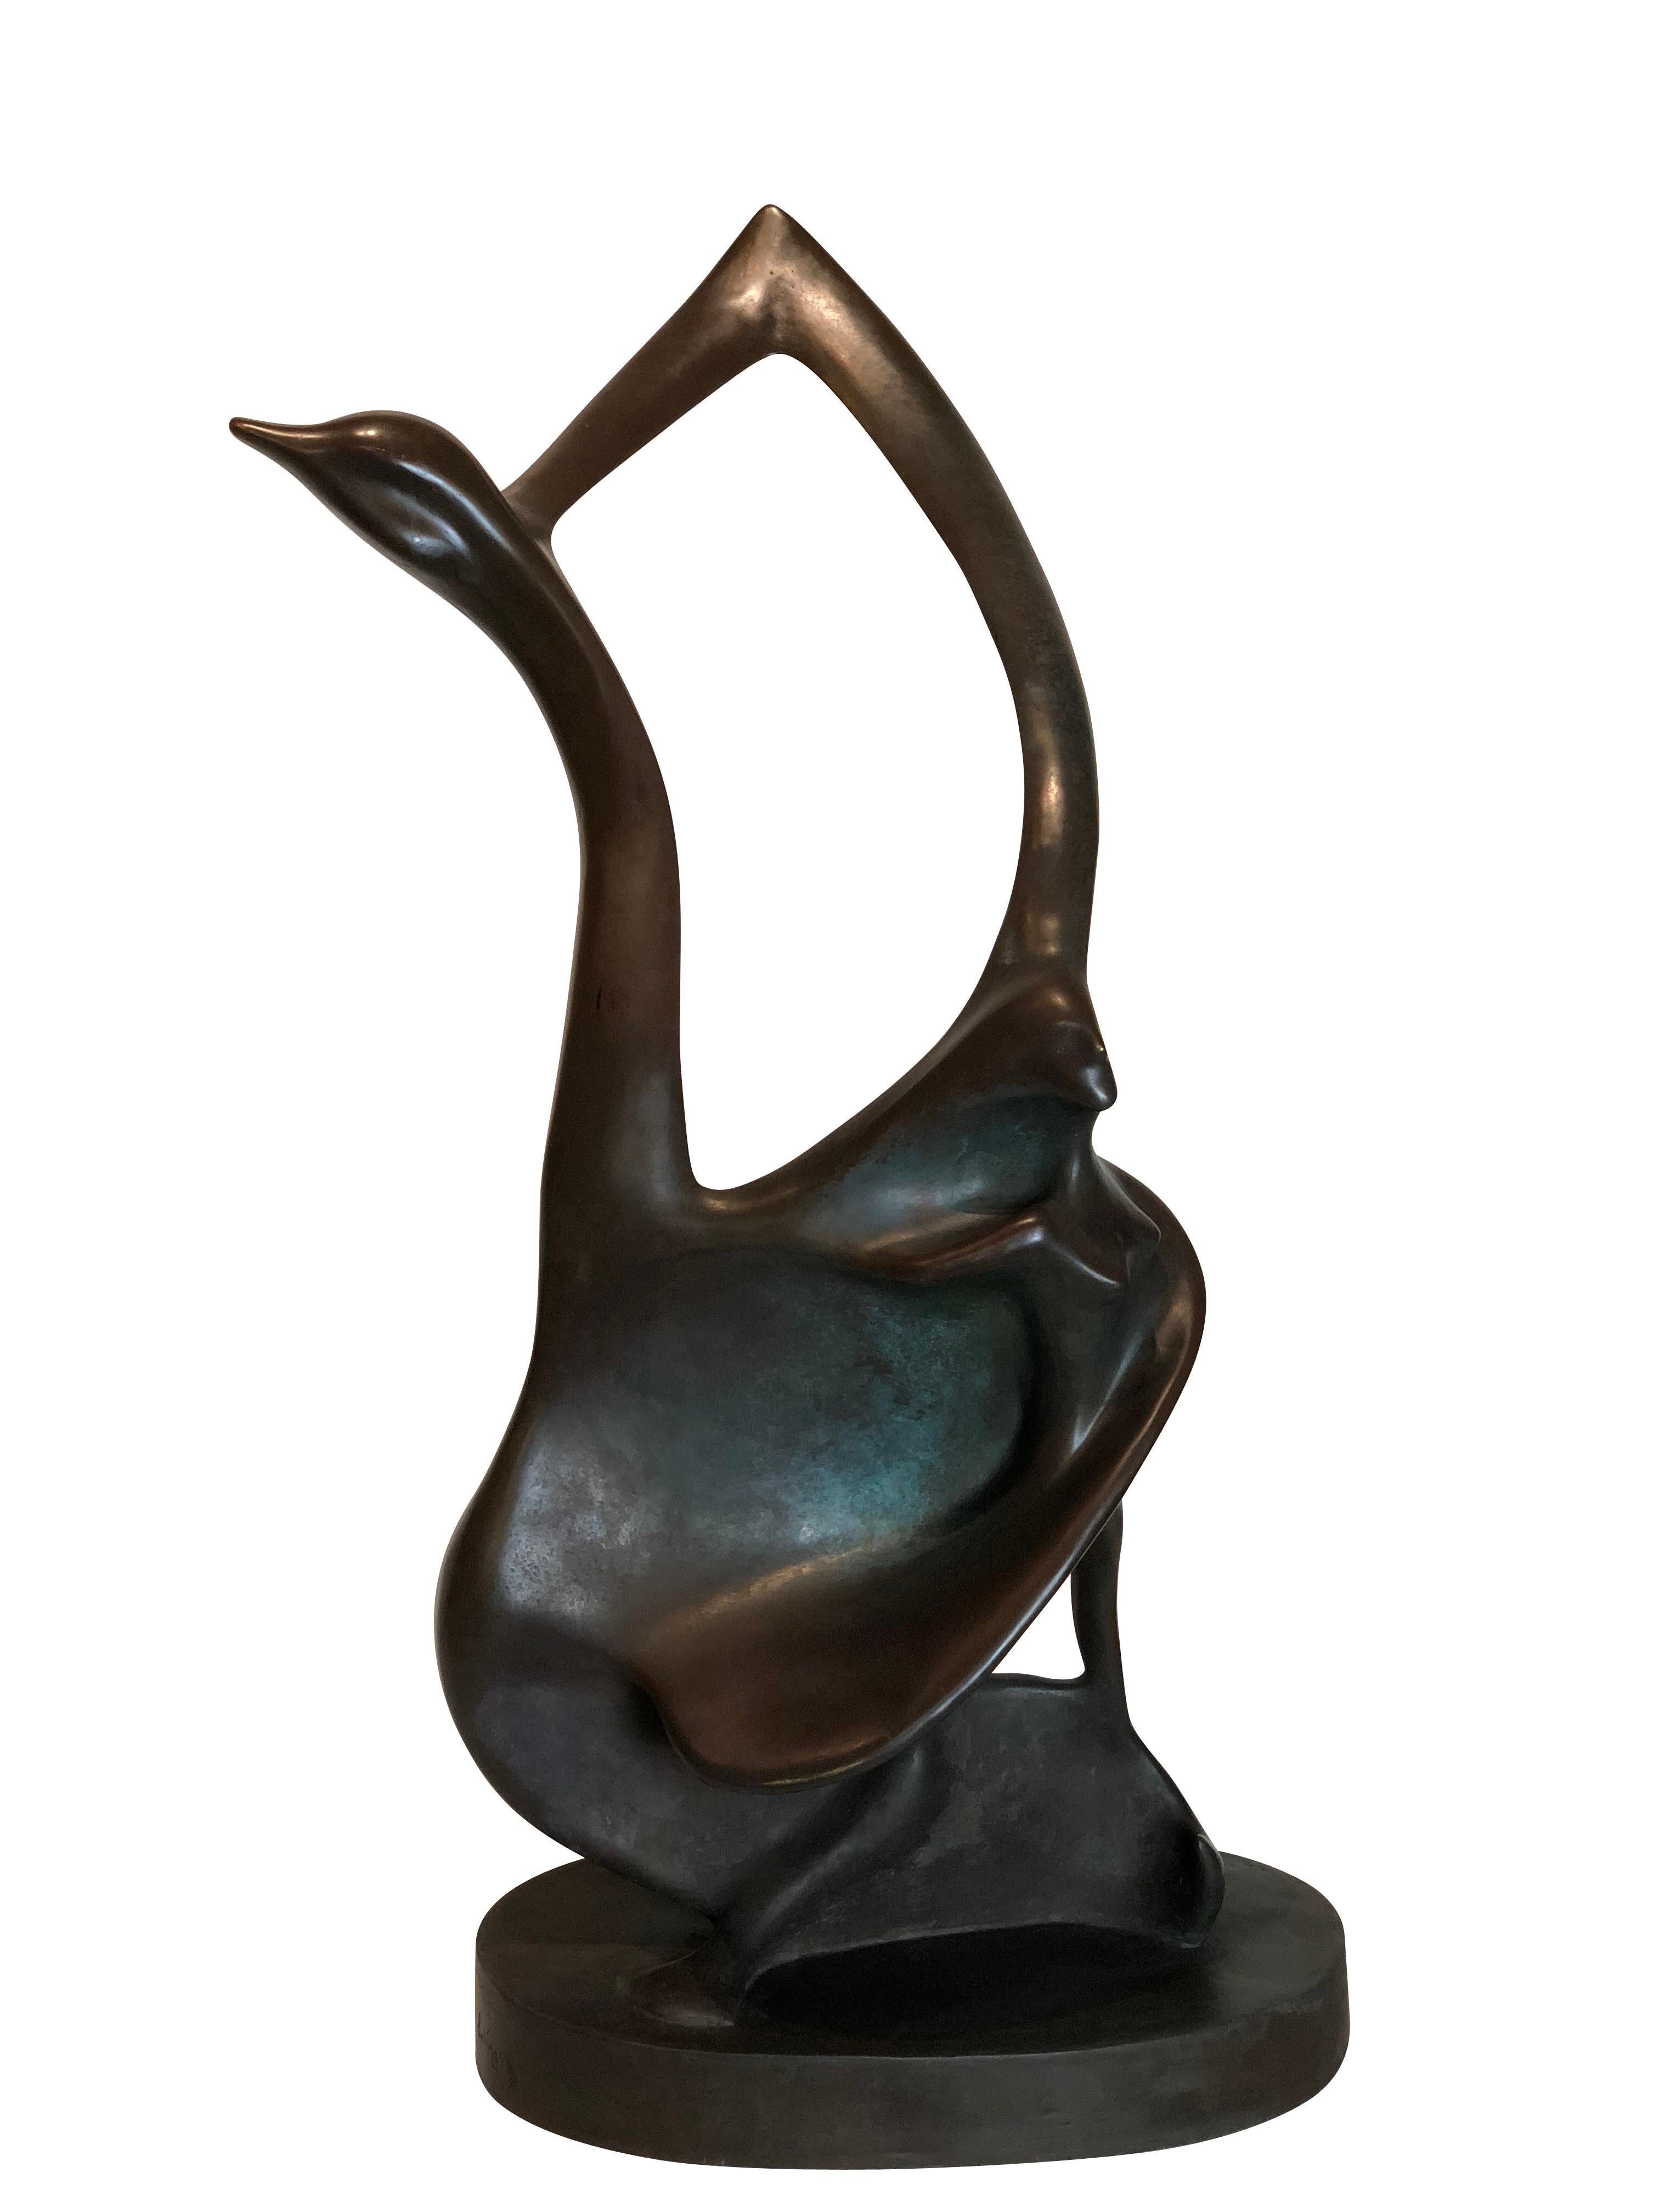 A large Colin Webster Watson modern bronze sculpture
Titled: 